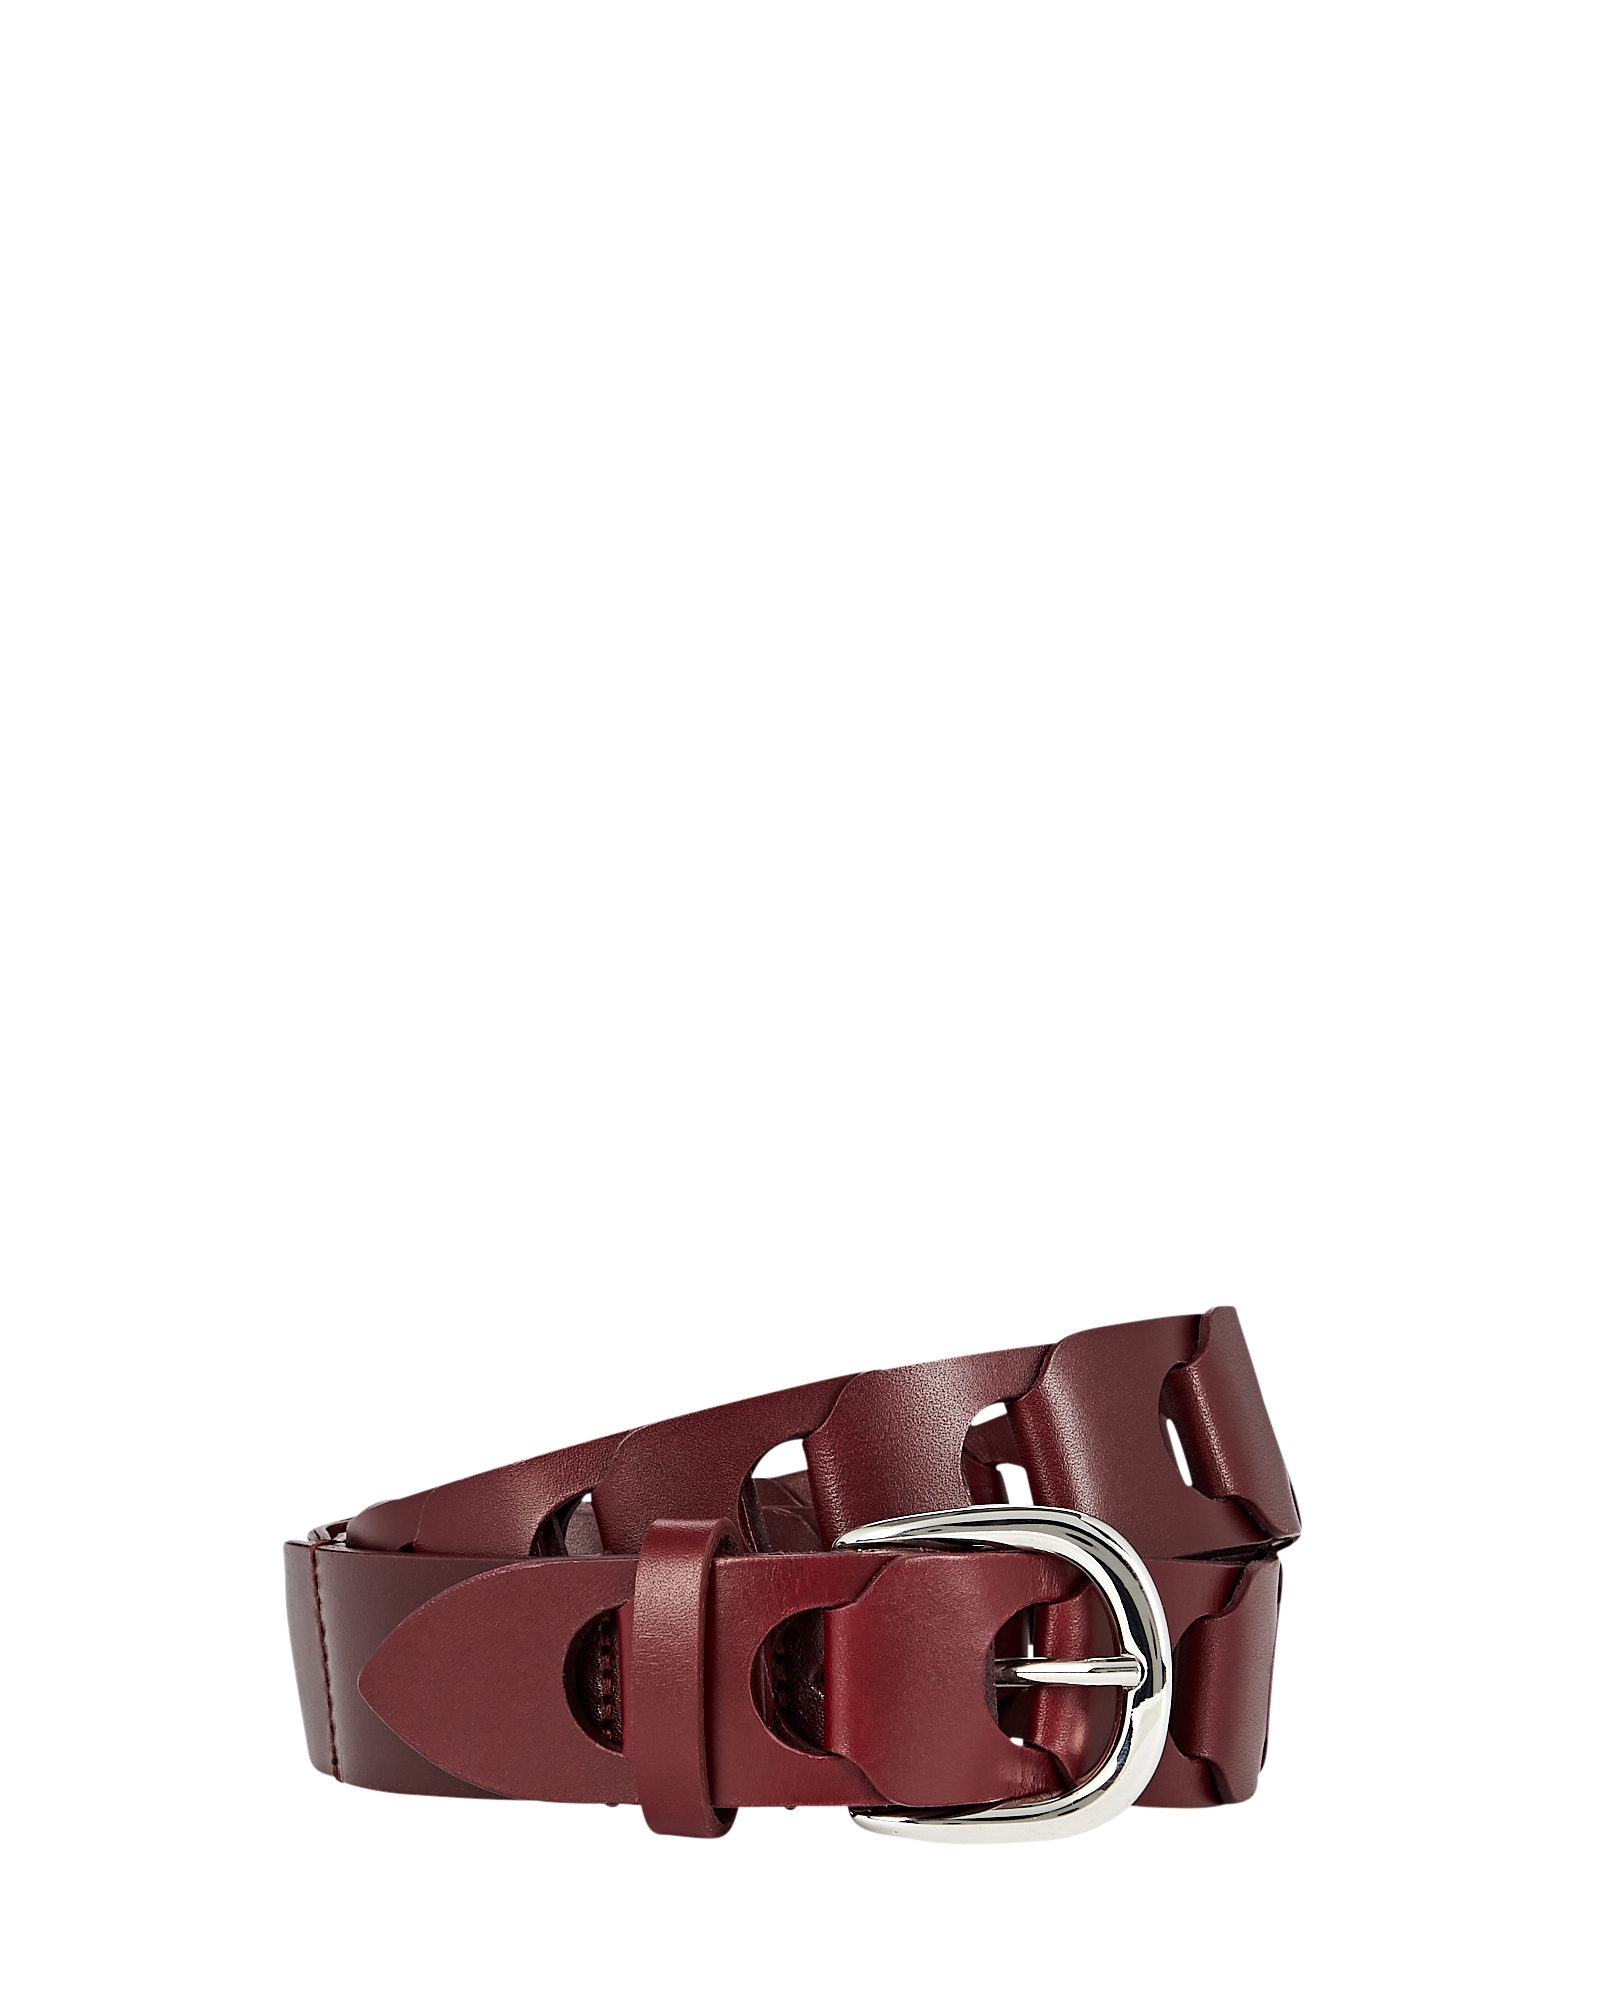 Isabel Marant Zak Braided Leather Belt | INTERMIX®